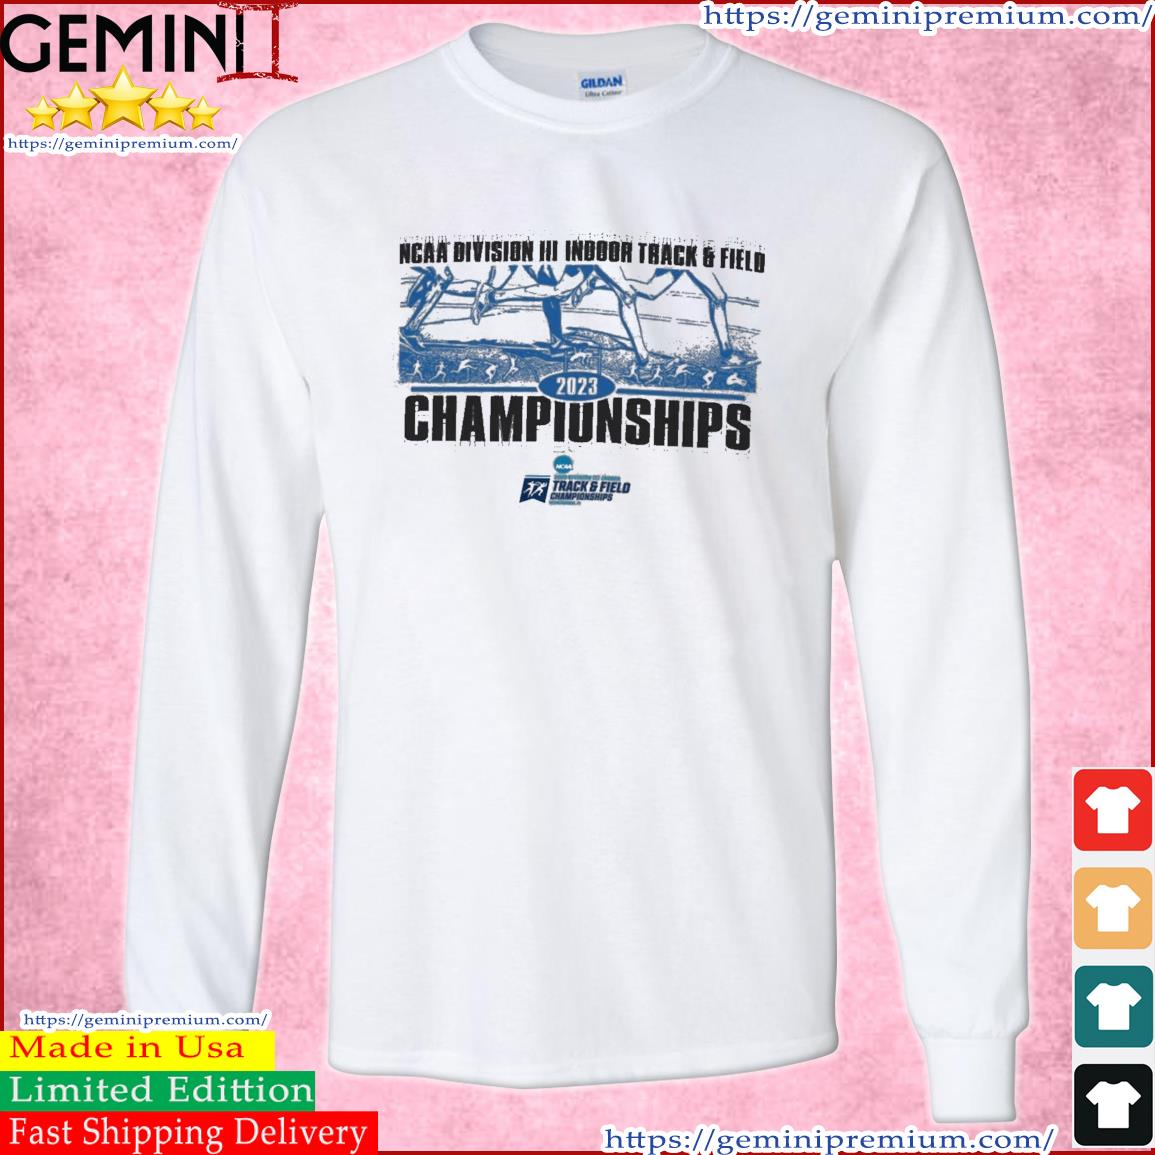 NCAA Division III Indoor Track & Field 2023 Final Championship Shirt Long Sleeve Tee